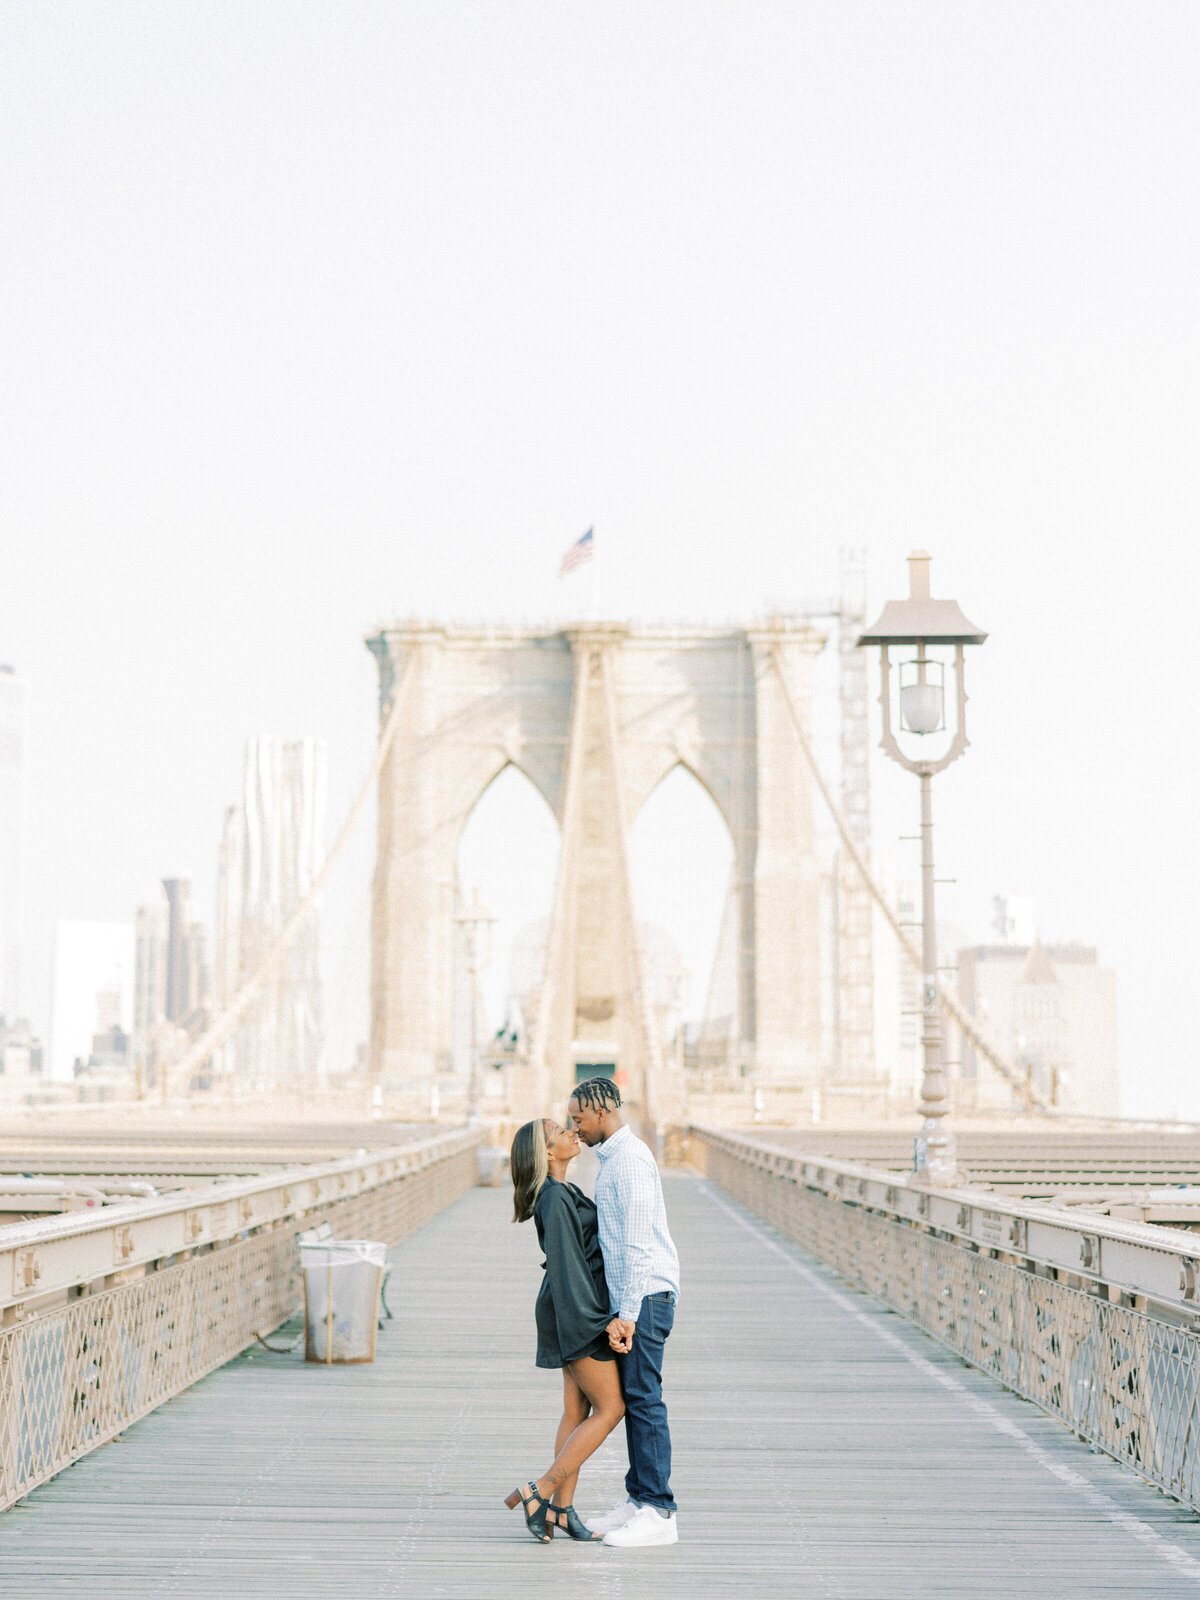 Brooklyn Bridge and DUMBO Sunrise, Engagement Session | Amarachi Ikeji Photography 16